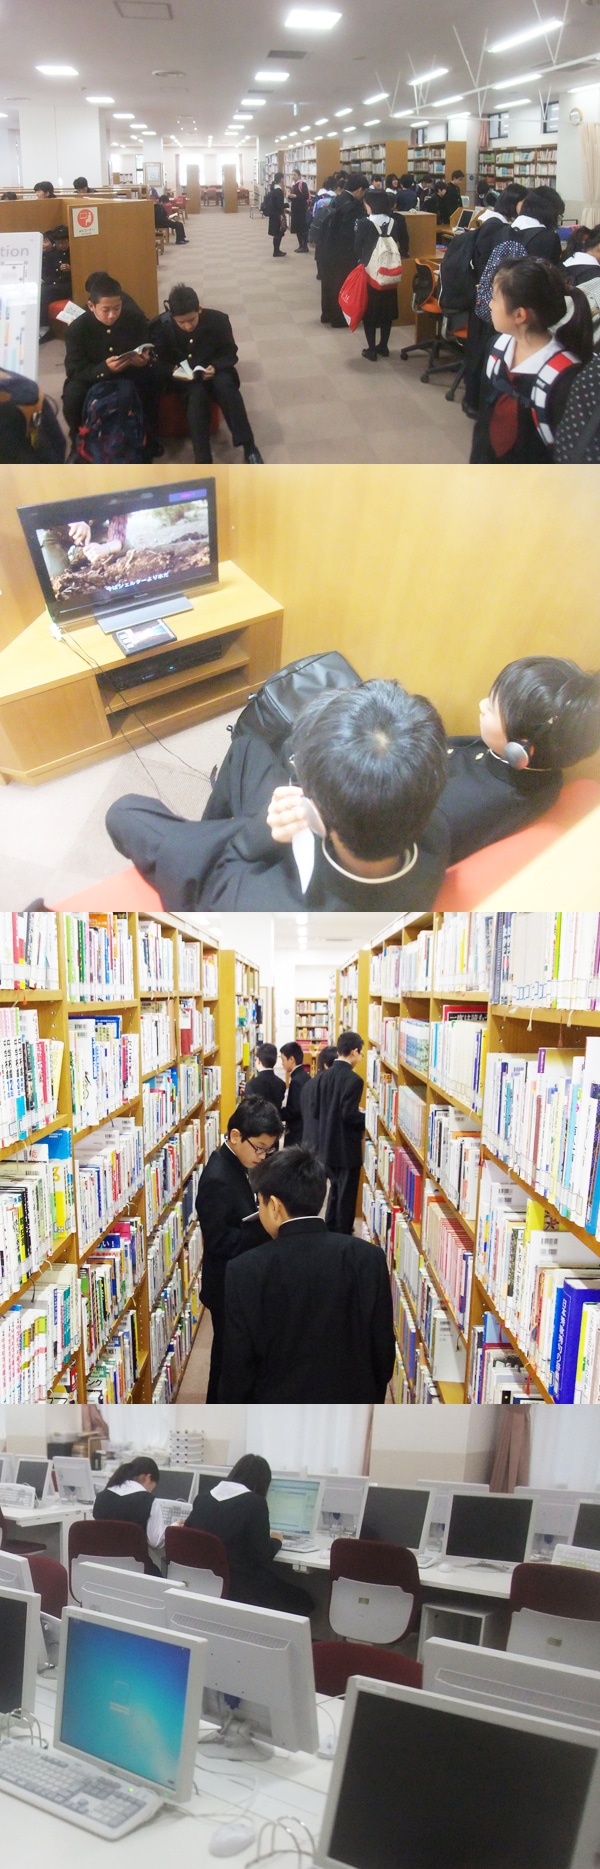 2014年度の中学部図書館利用がスタート